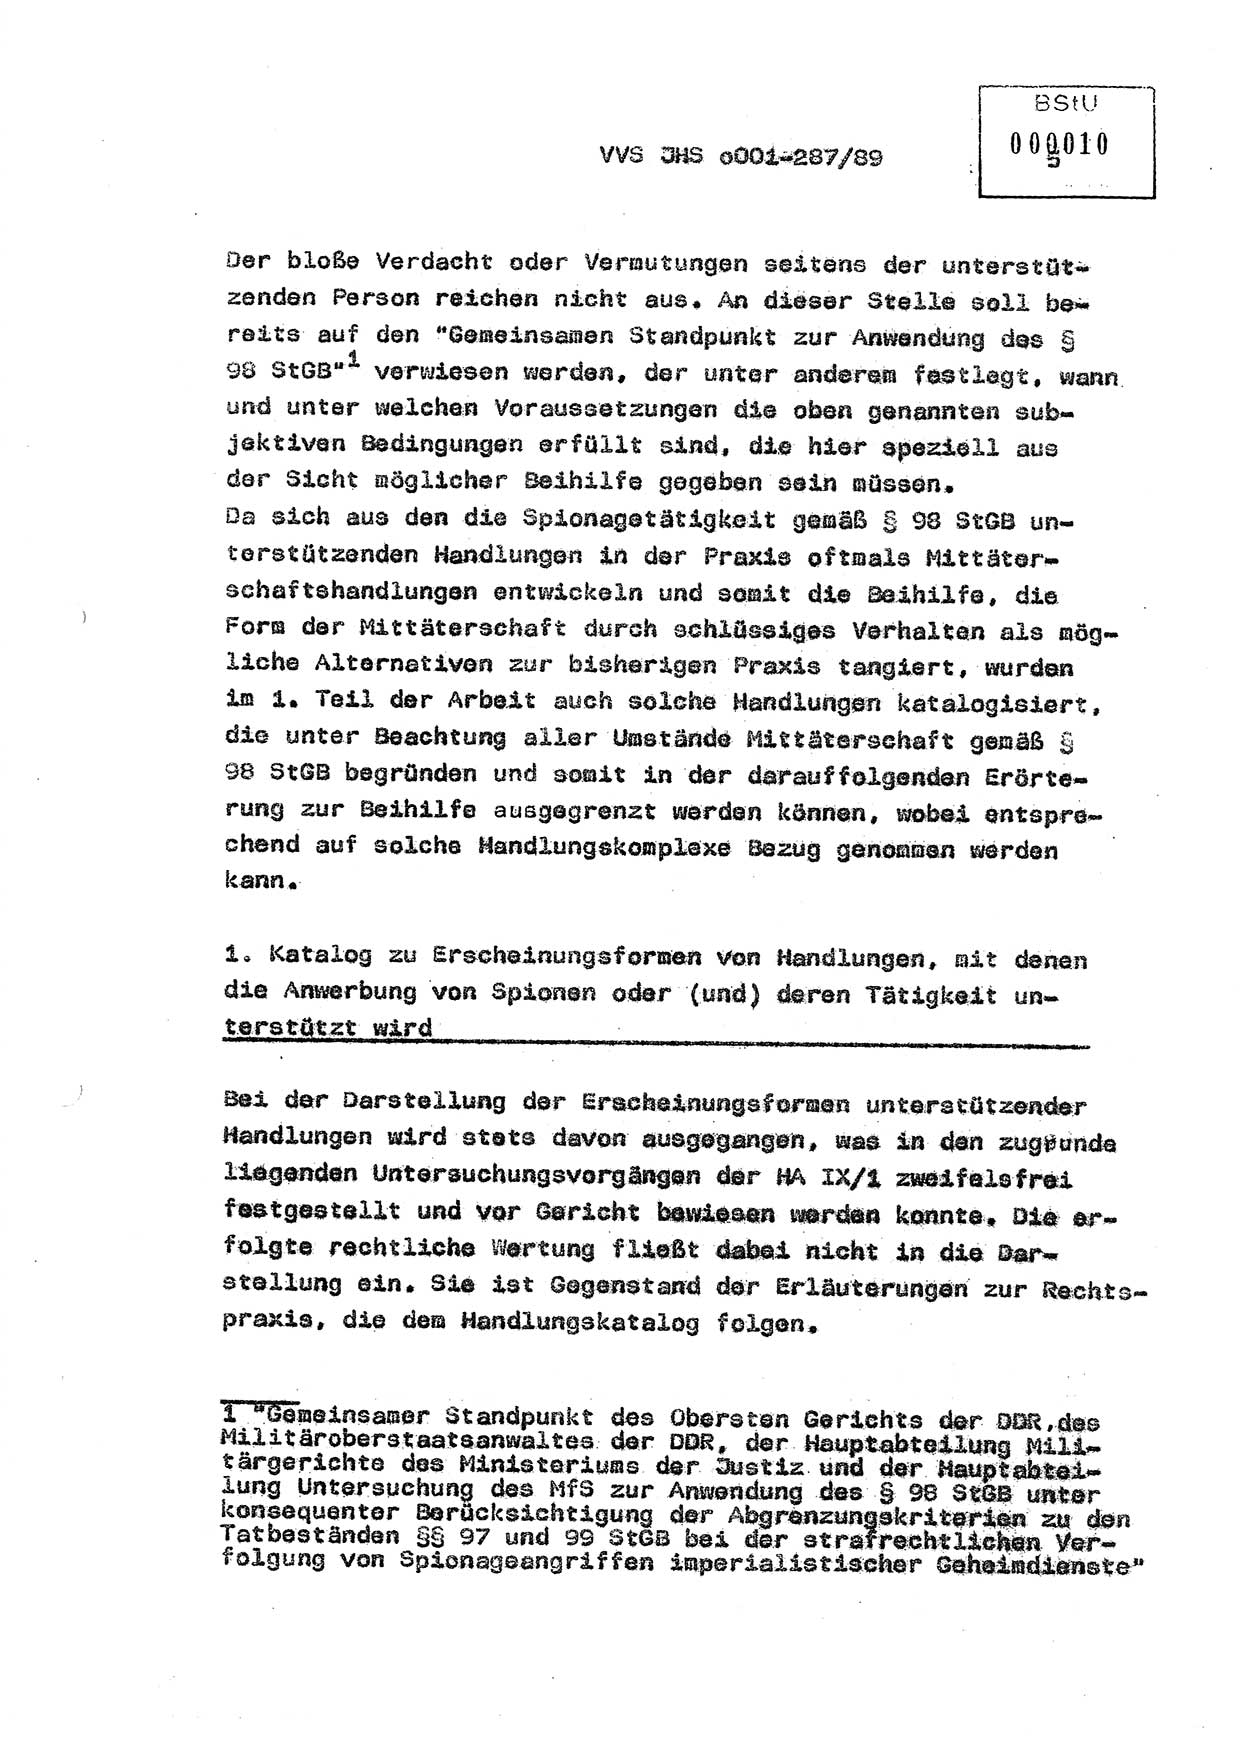 Diplomarbeit, Offiziersschüler Harald Wabst (HA Ⅸ/1), Ministerium für Staatssicherheit (MfS) [Deutsche Demokratische Republik (DDR)], Juristische Hochschule (JHS), Vertrauliche Verschlußsache (VVS) o001-287/89, Potsdam 1989, Seite 5 (Dipl.-Arb. MfS DDR JHS VVS o001-287/89 1989, S. 5)